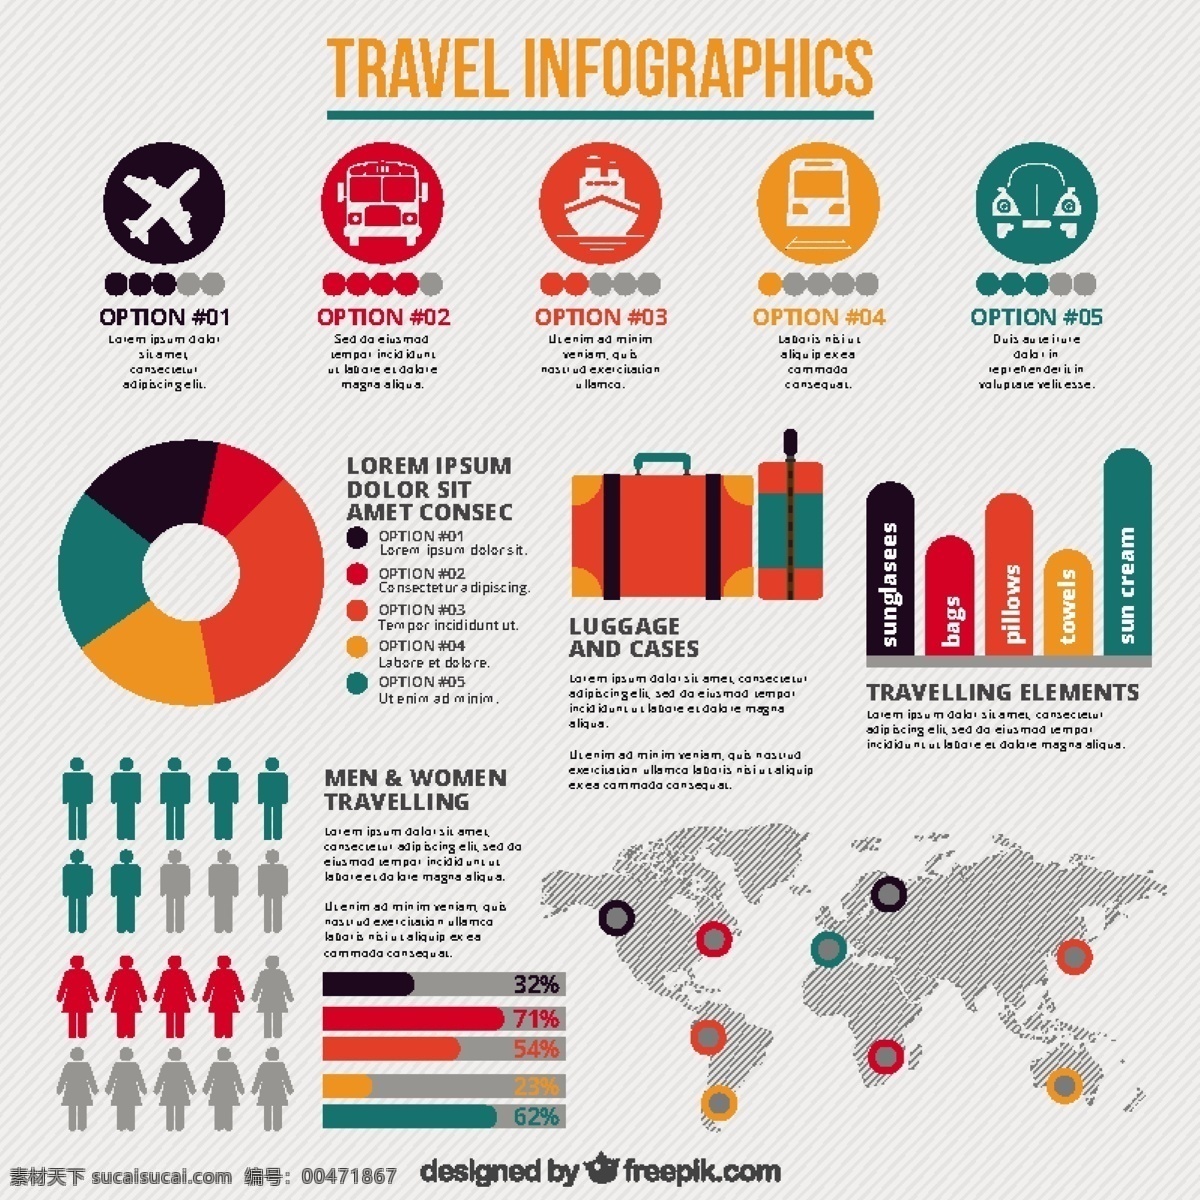 旅游 信息 图表 对象 旅行 模板 地图 世界 世界地图 色彩 图形 平 过程 图表模板 数据 平面设计